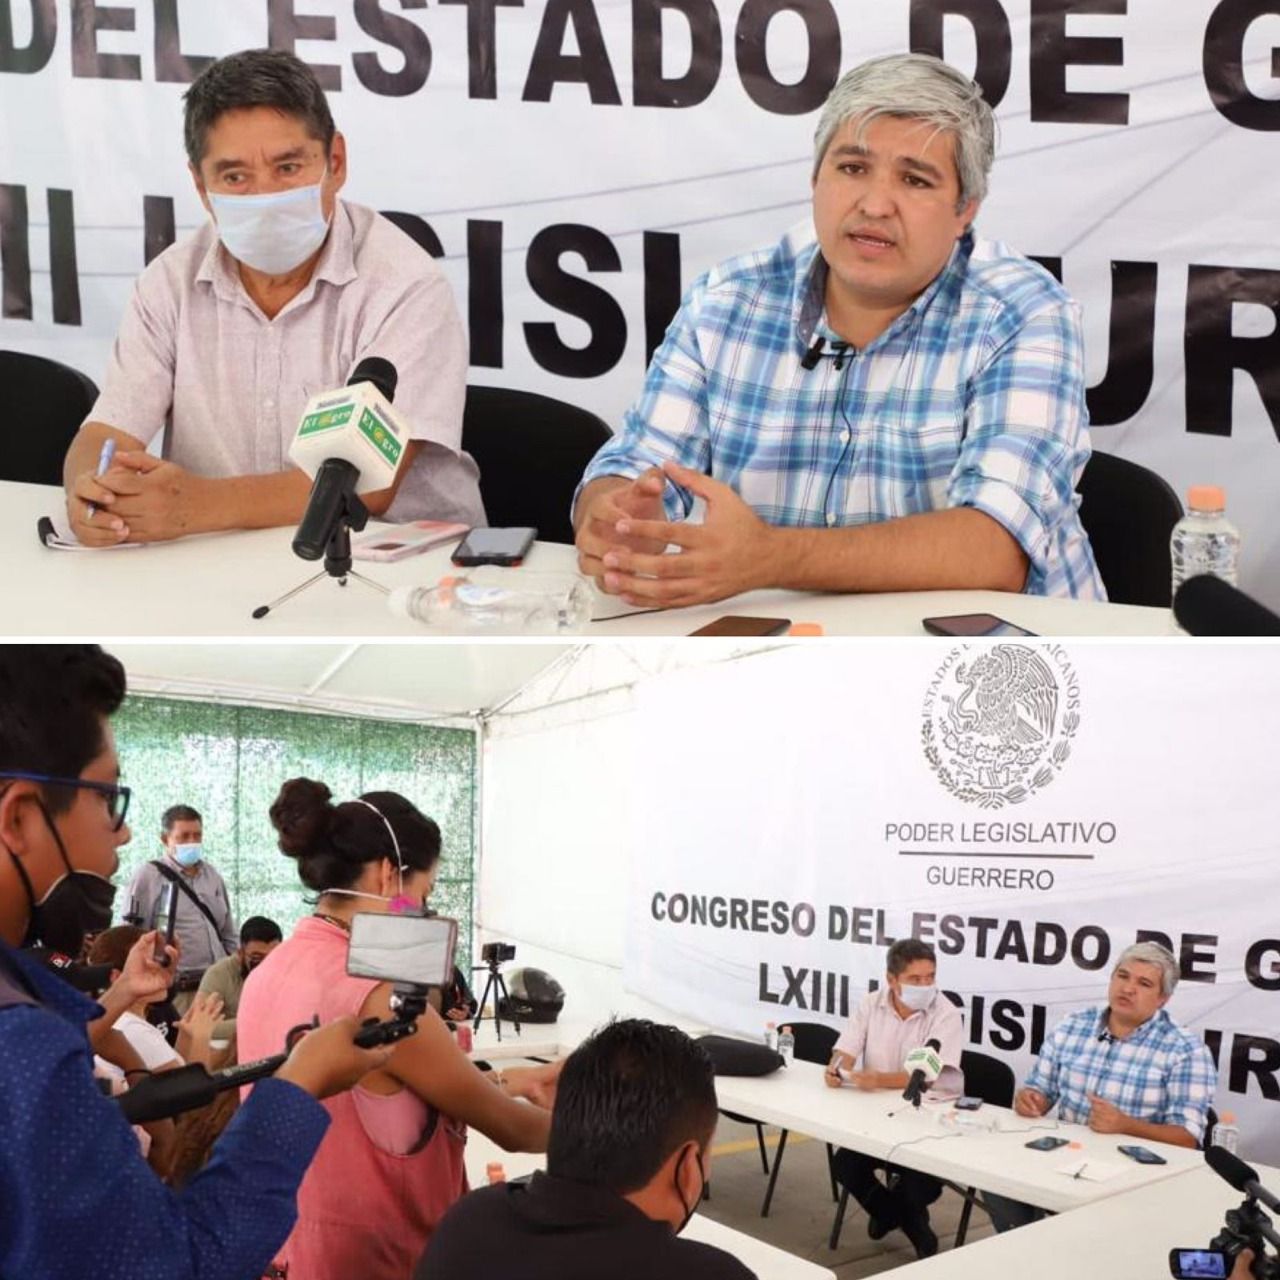 Reconoce el Congreso a normalista de ayotzinapa por su disciplina y voluntad de manifestarse pacíficamente